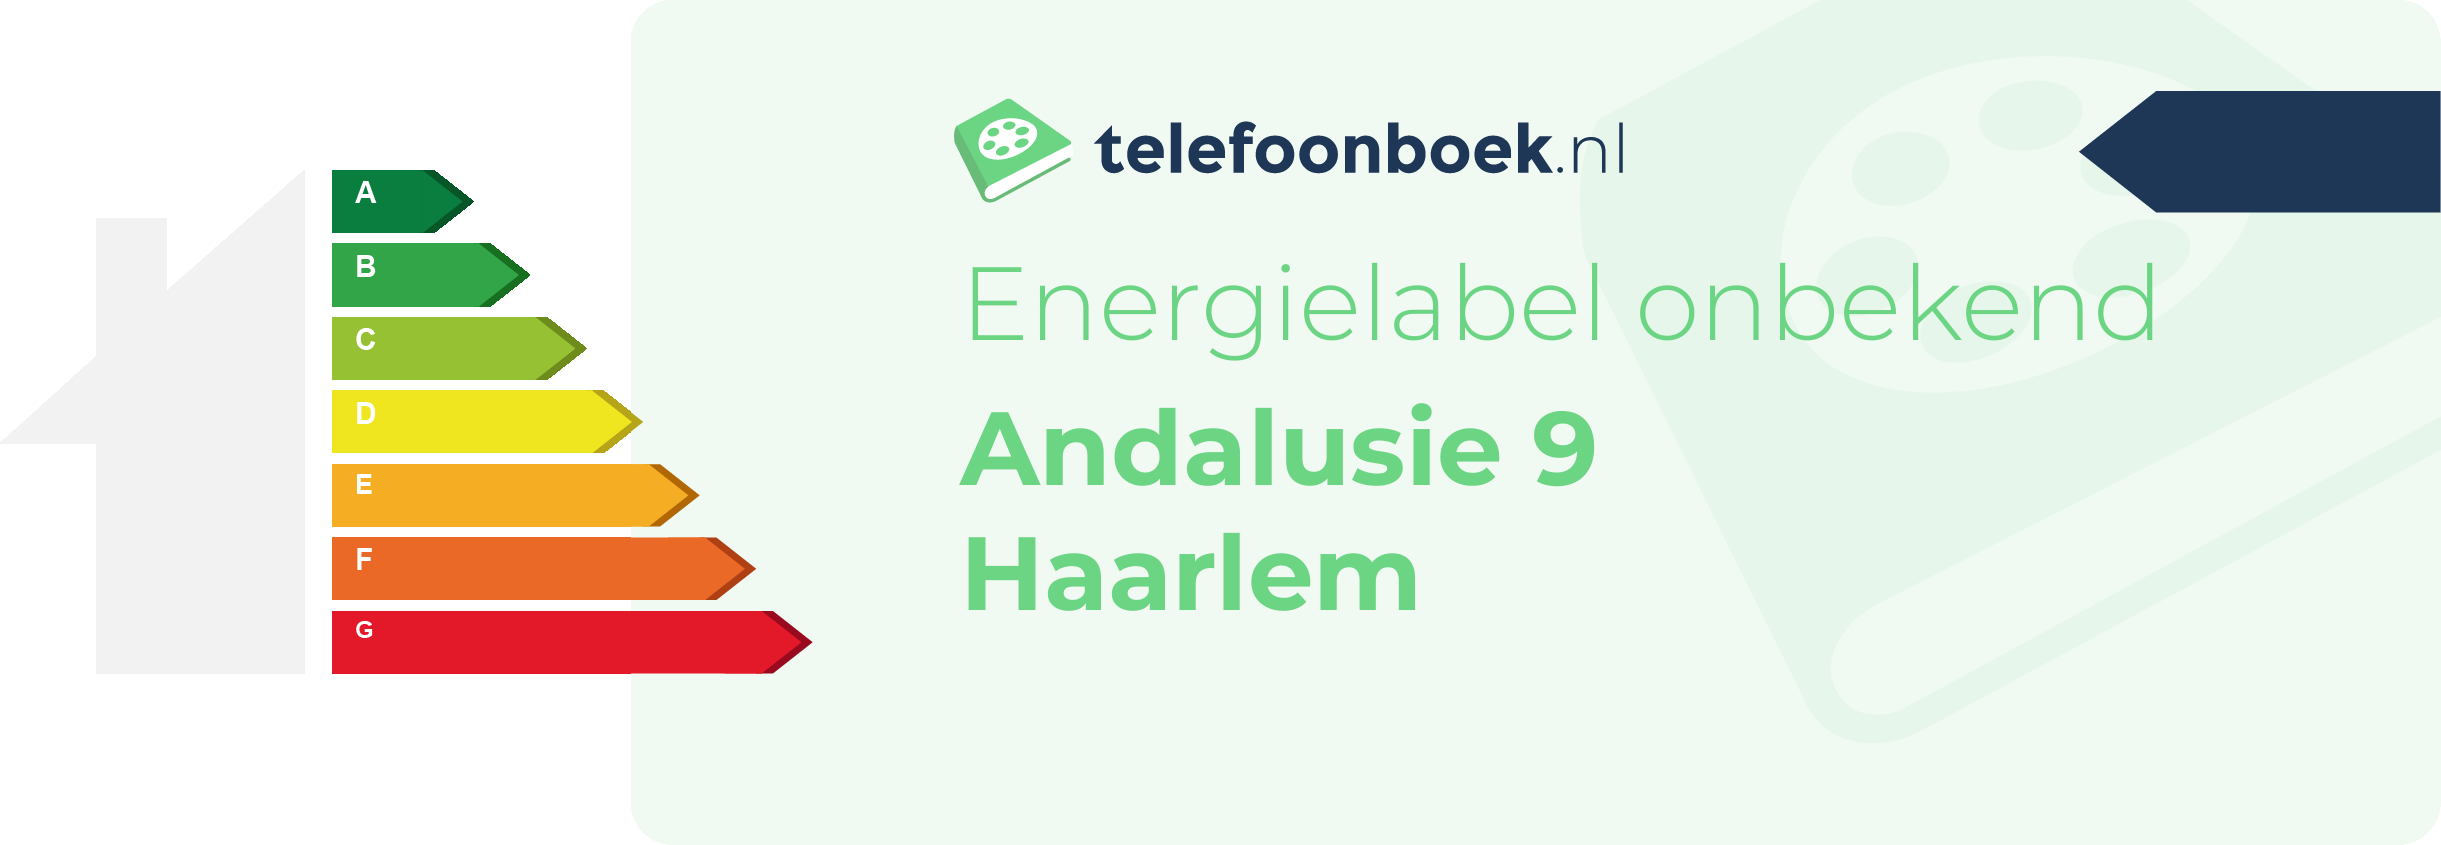 Energielabel Andalusie 9 Haarlem